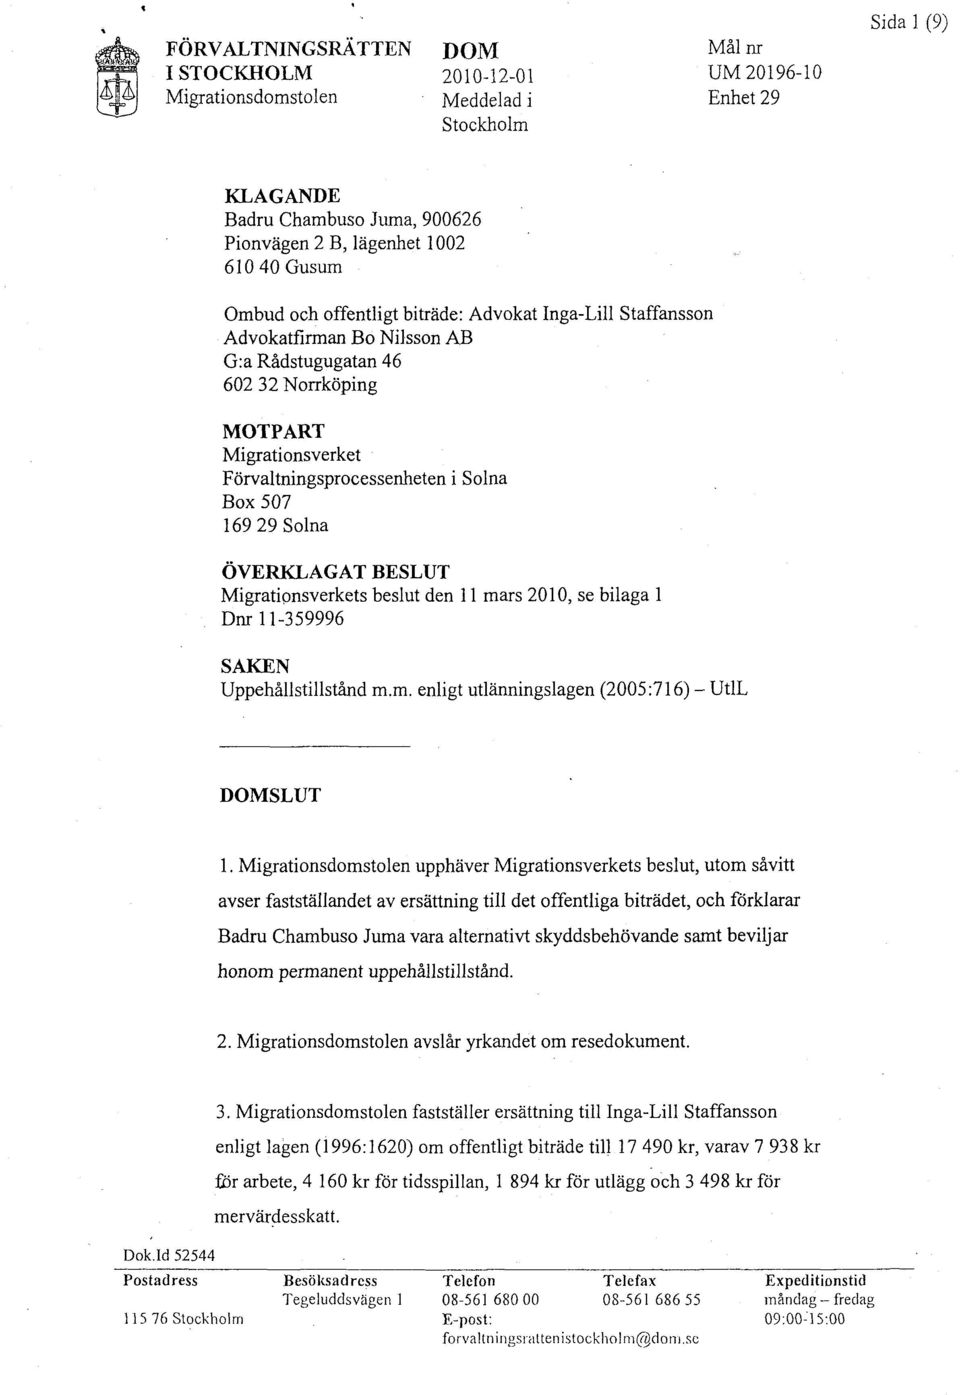 Solna ÖVERKLAGAT BESLUT Migratipnsverkets beslut den 11 mars 2010, se bilaga l Dnr 11-359996 SAKEN Uppehållstillstånd m.m. enligt utlänningslagen (2005:716) - UtlL DOMSLUT 1.